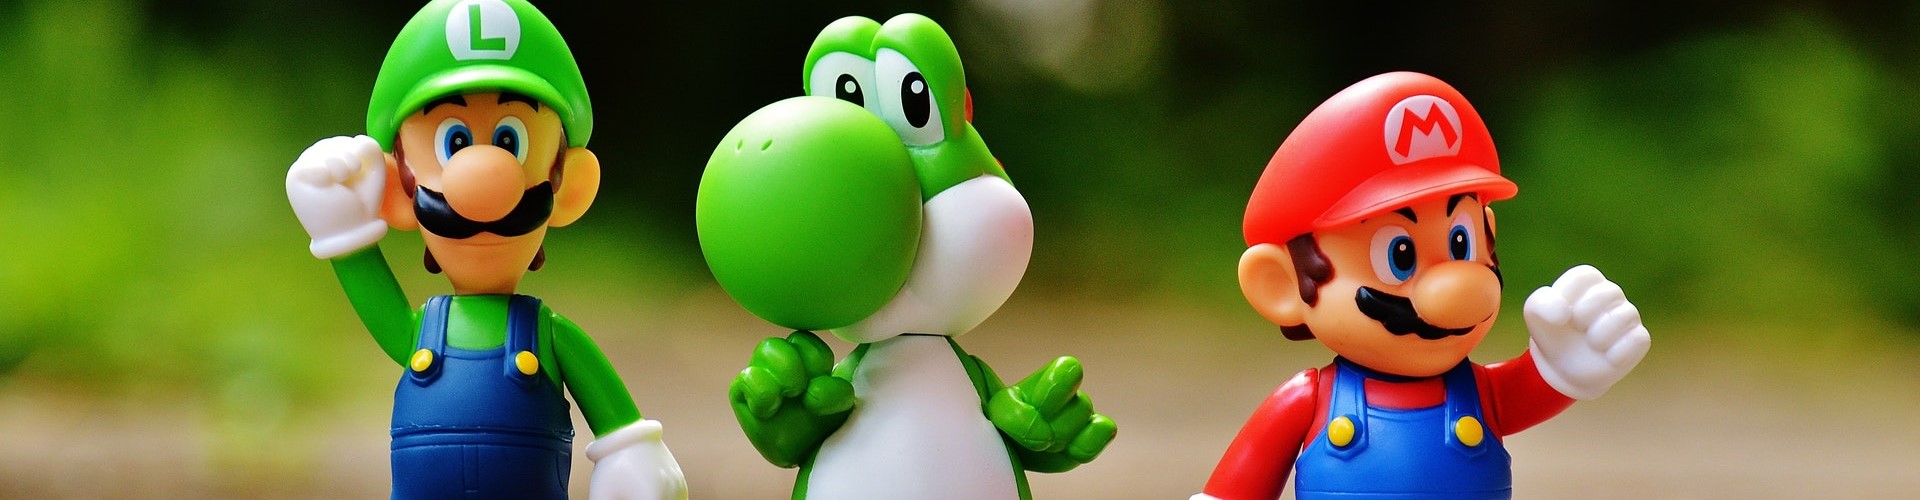 Focus Photo Of Super Mario Luigi And Yoshi Figurines 163036